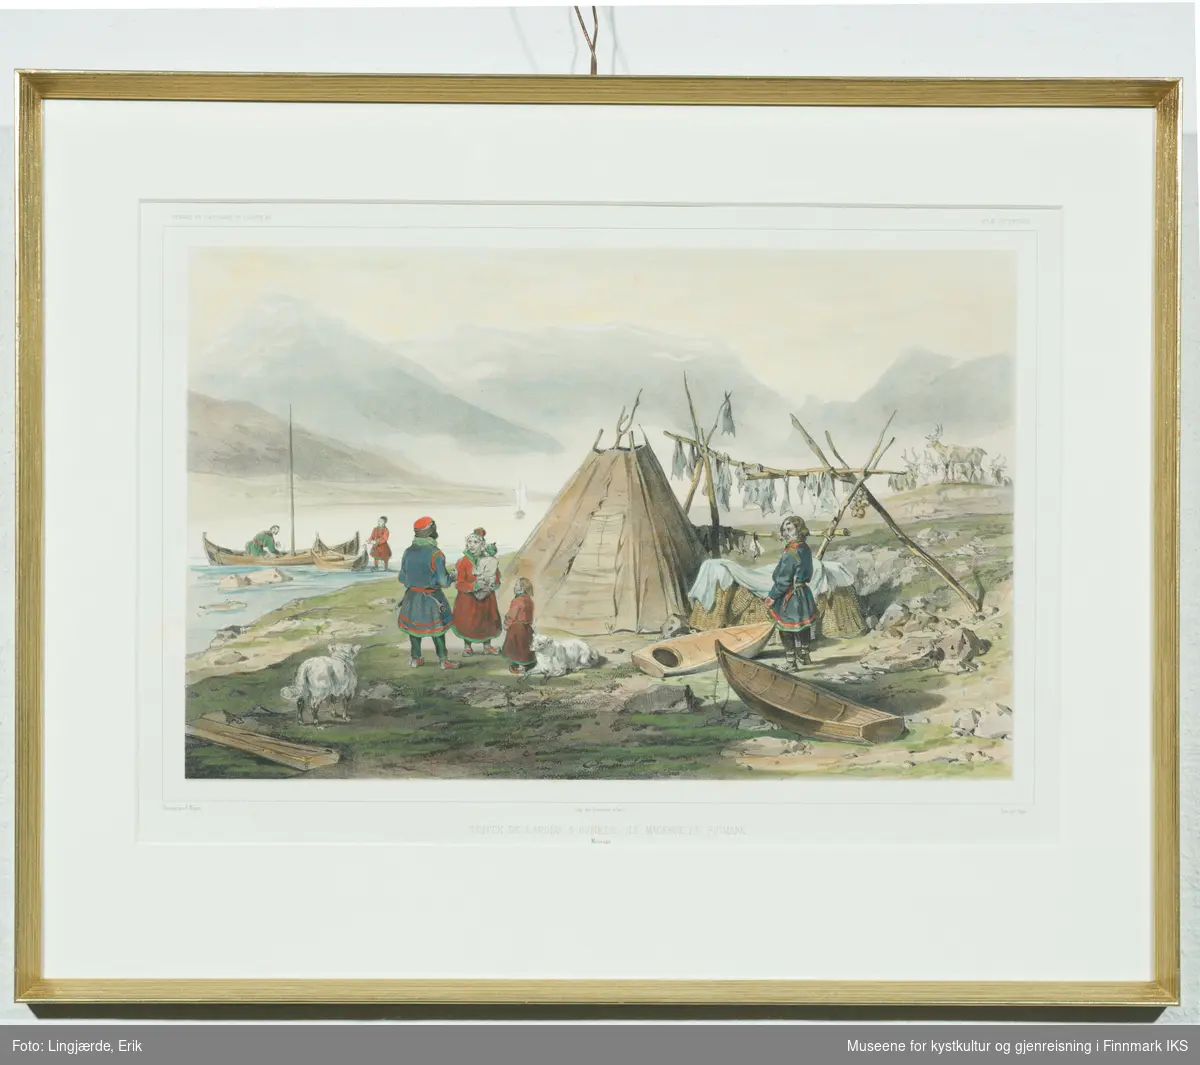 Et sameleir med samer rundt en lavvo, småbåter i sjøen, hjeller, utstyr og flere rein til høyre. (Fra den kgl. franske vitenskapelige Recherche-ekspedisjonen til Finnmark 1838.)